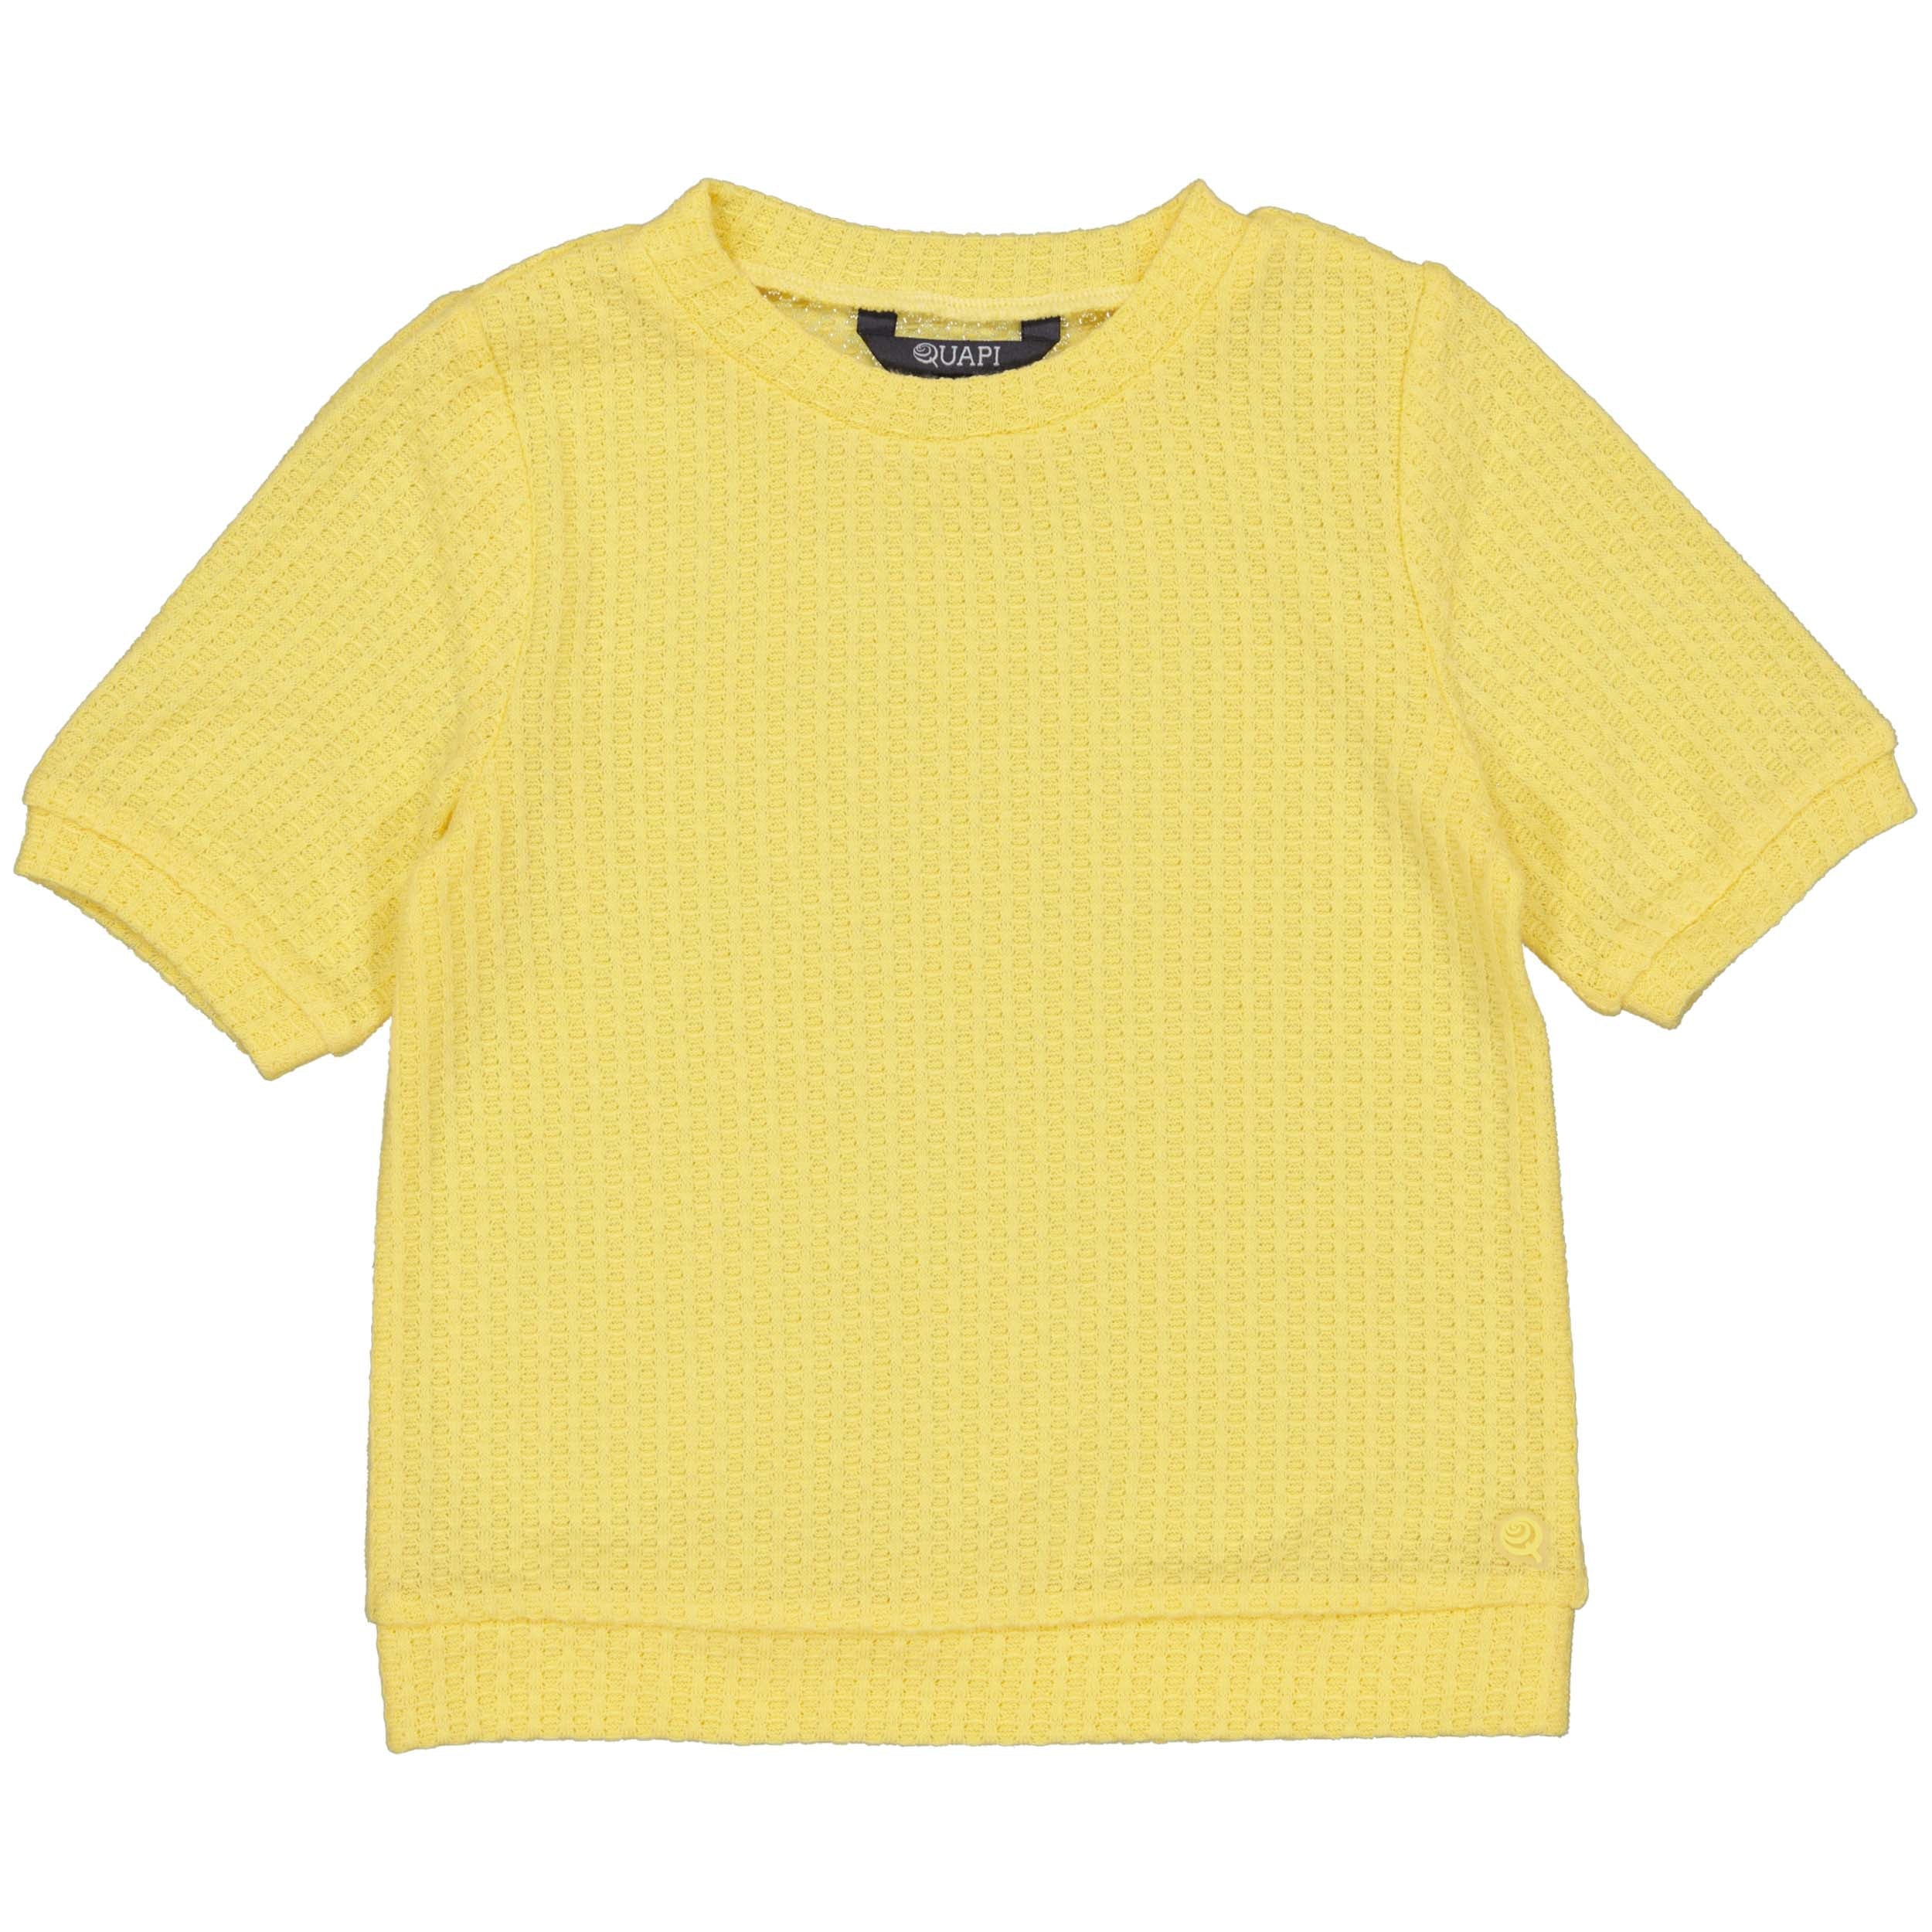 Meisjes Knitted top BONITAQS243 van Quapi in de kleur Soft Yellow in maat 122-128.